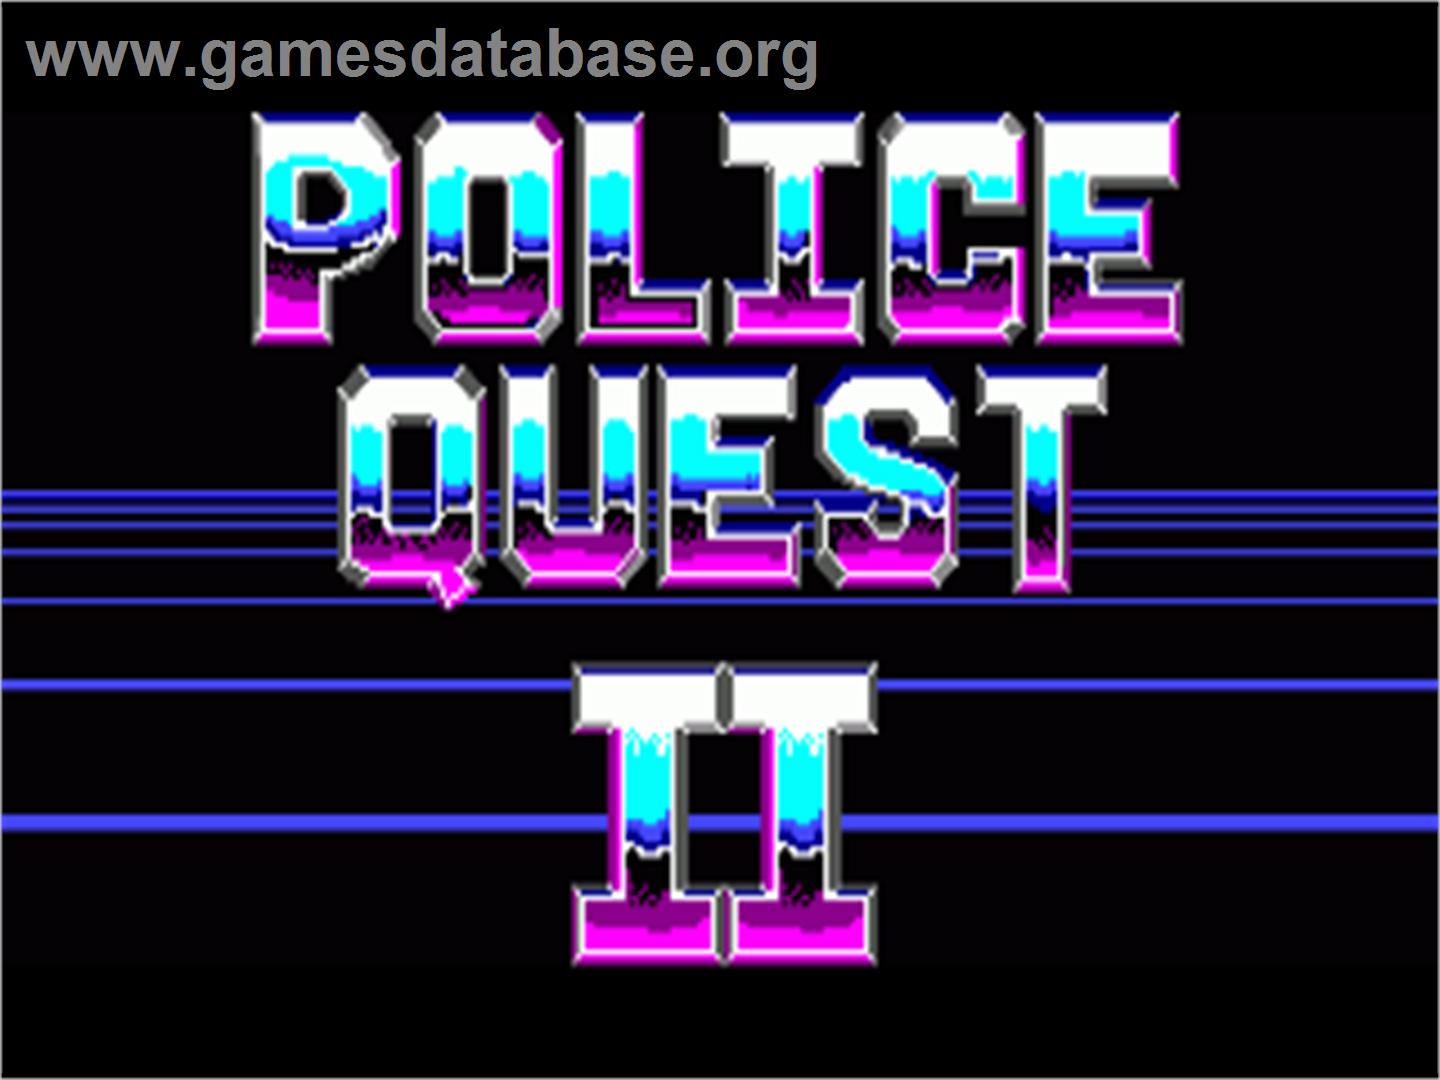 Police Quest 2: The Vengeance - Commodore Amiga - Artwork - Title Screen